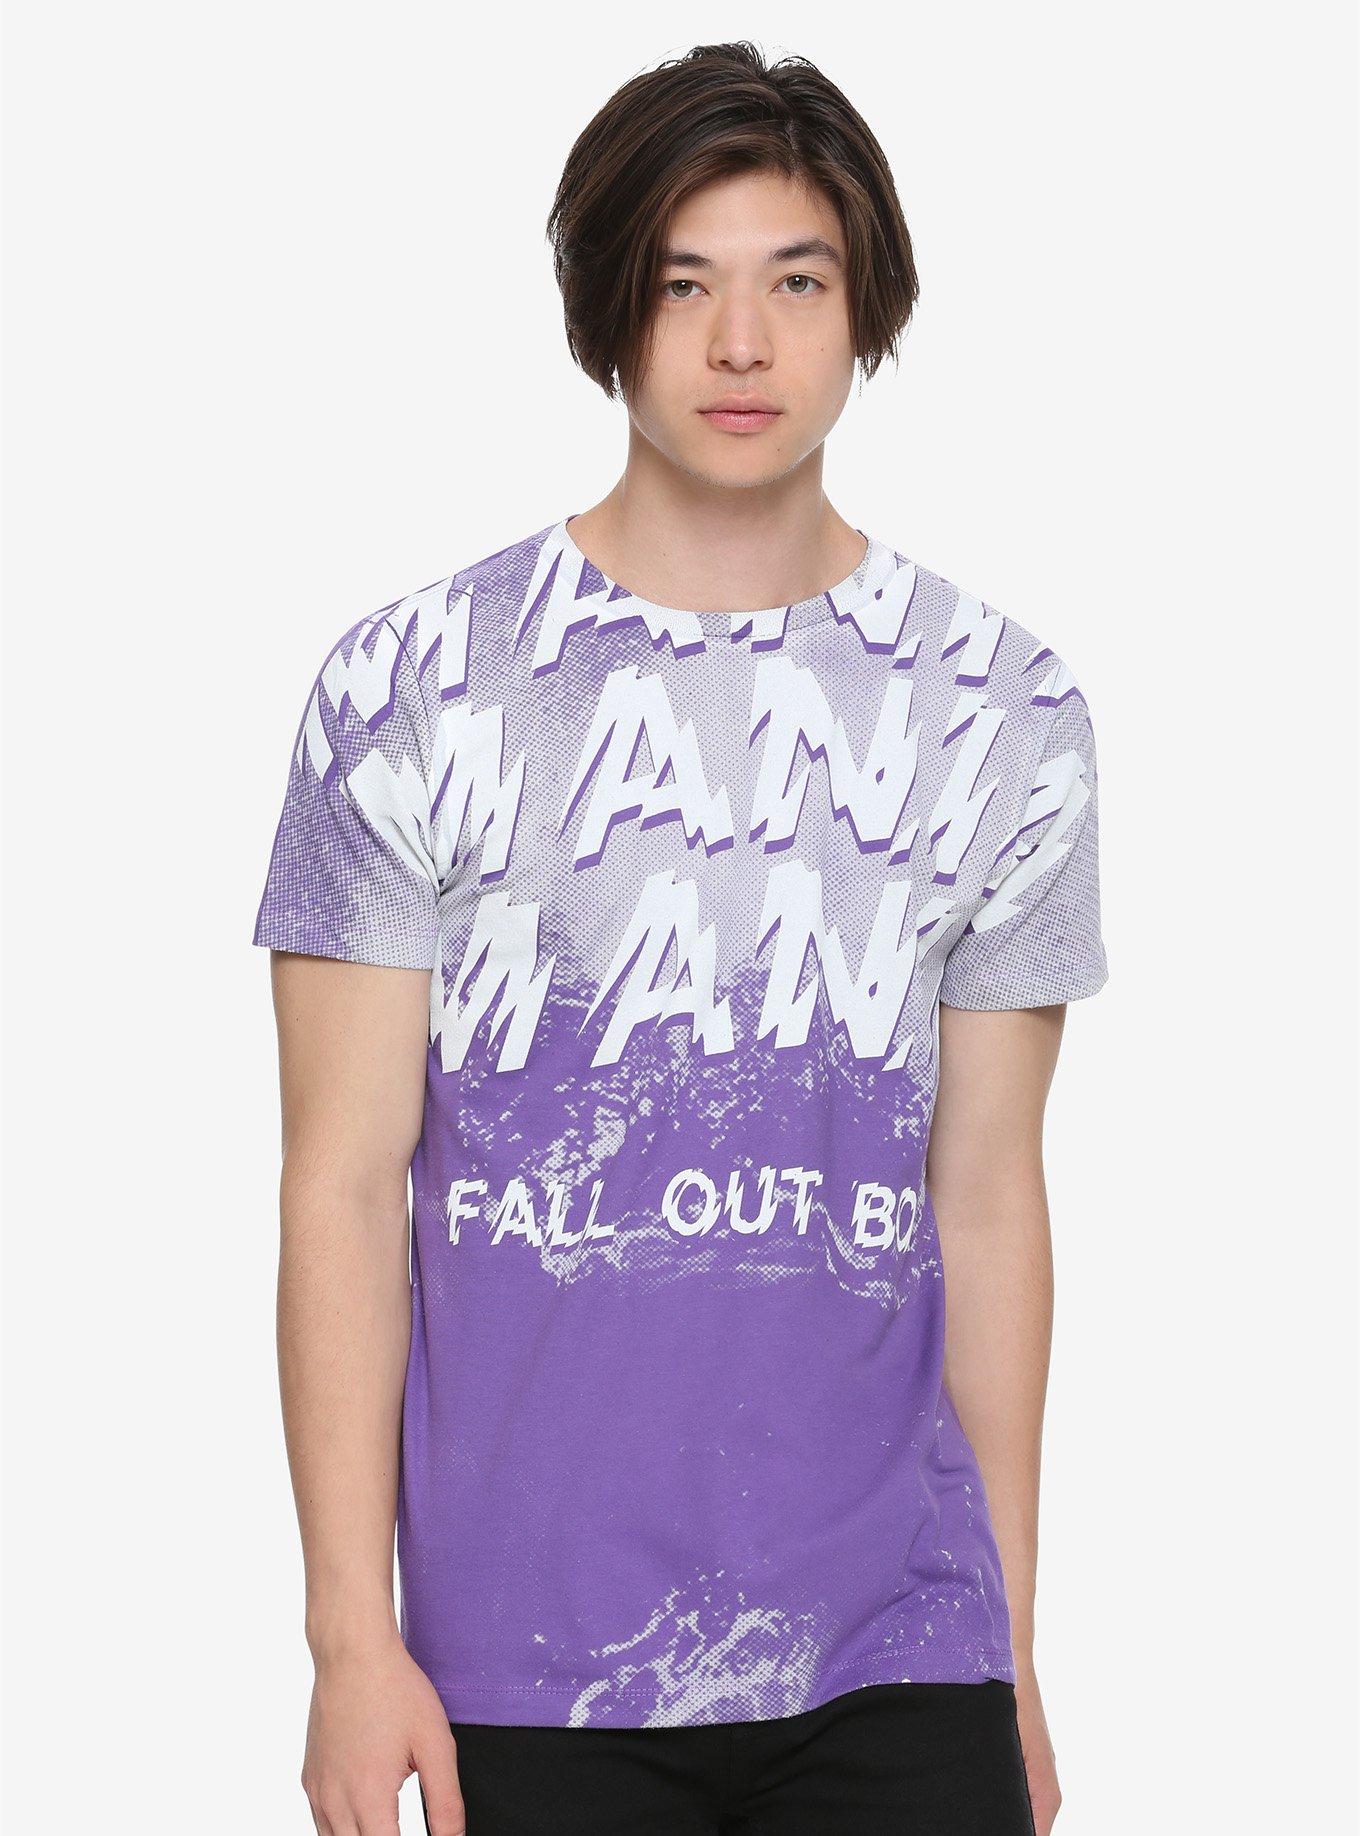 Fall Out Boy M A N I A Pop Art T-Shirt, PURPLE, alternate